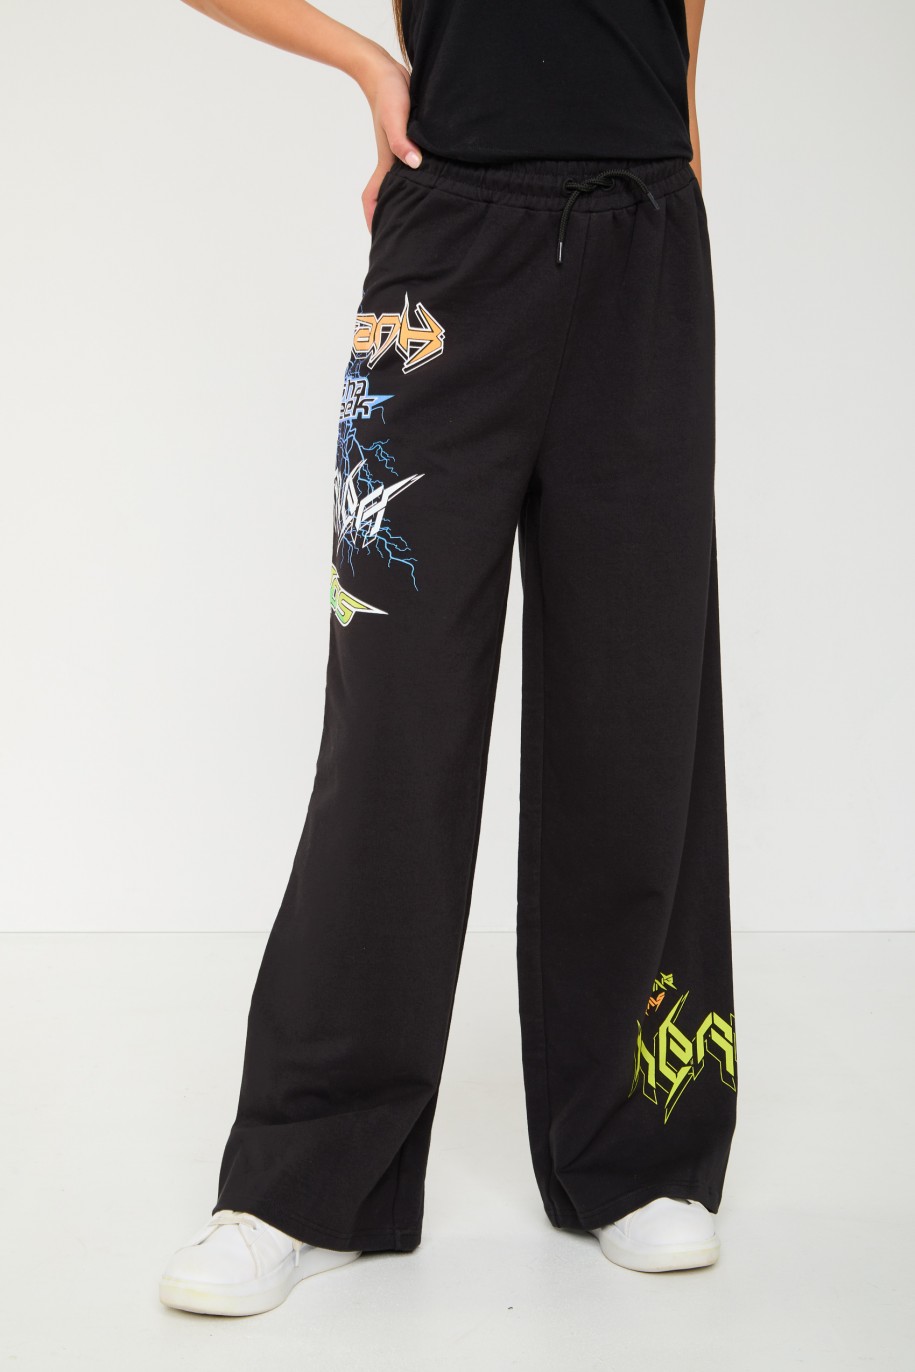 Czarne spodnie dresowe typu WIDE LEG z nadrukami - 44633